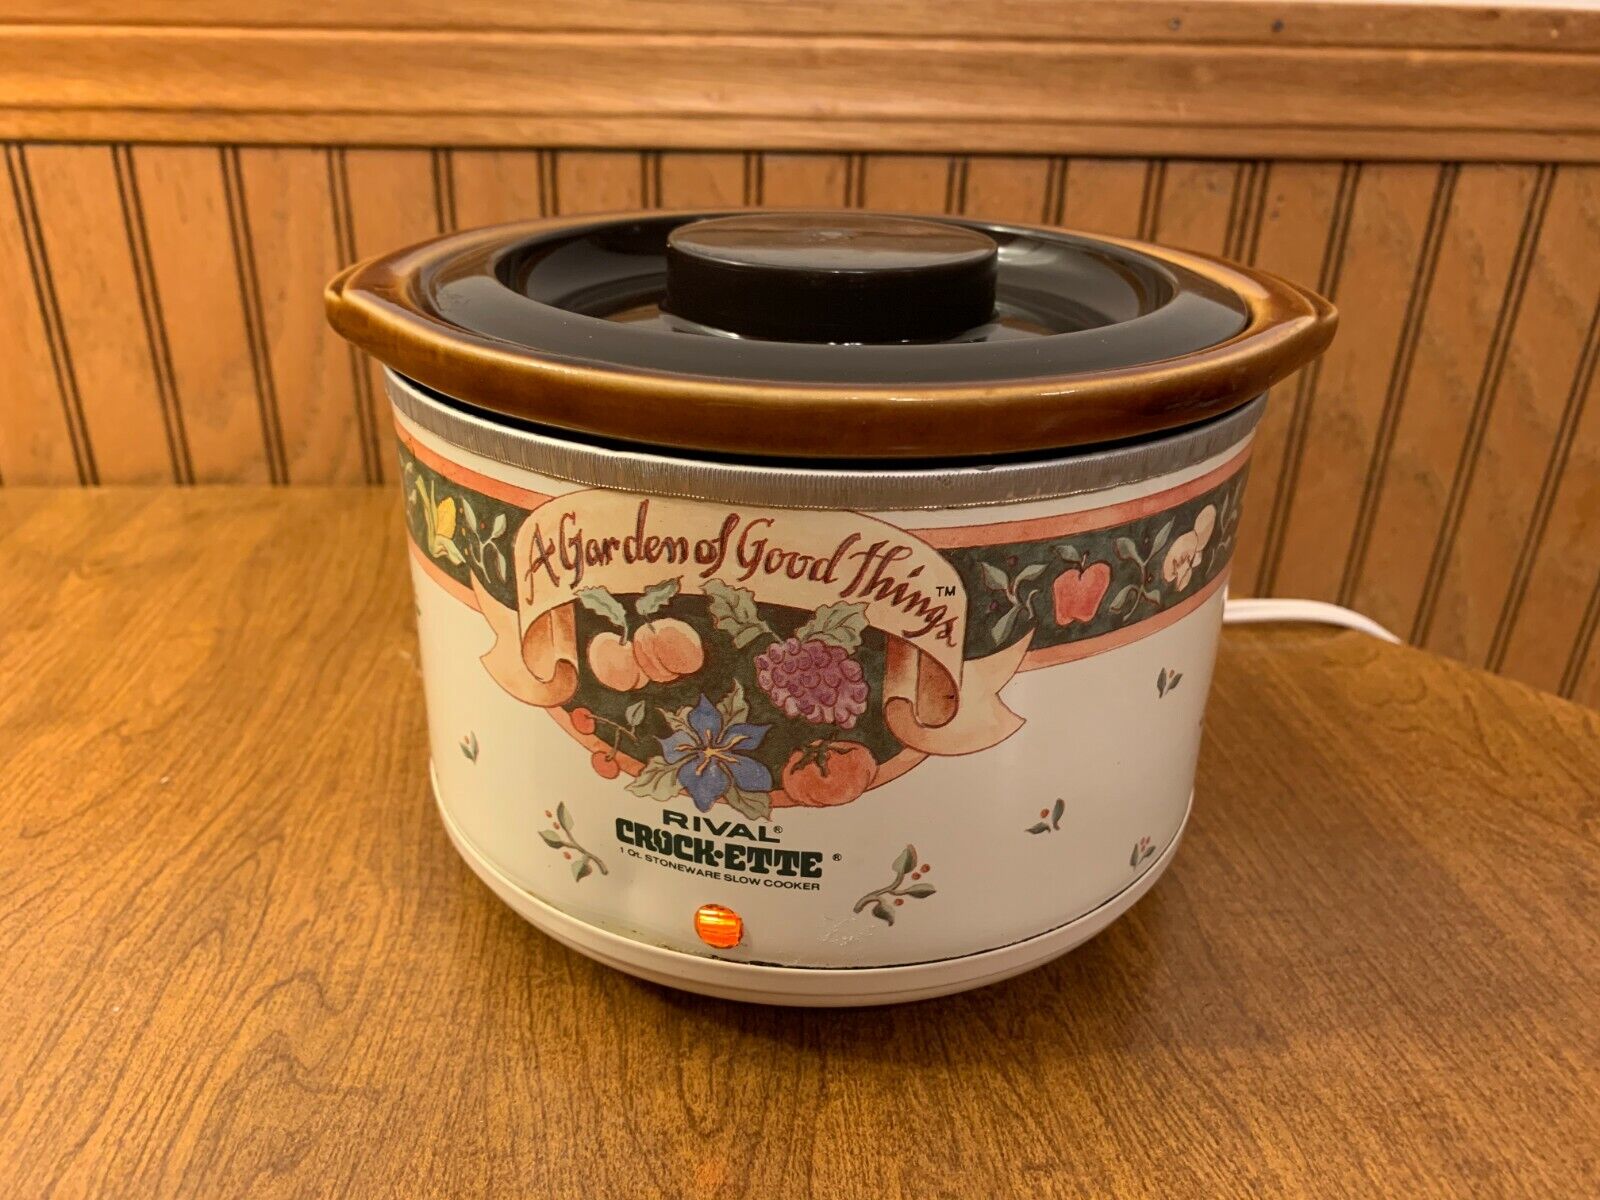 Vintage San Antonio Mall Rival Crock-ette Crock Pot Slow Cooker 3200 Plastic 1-Qt Latest item